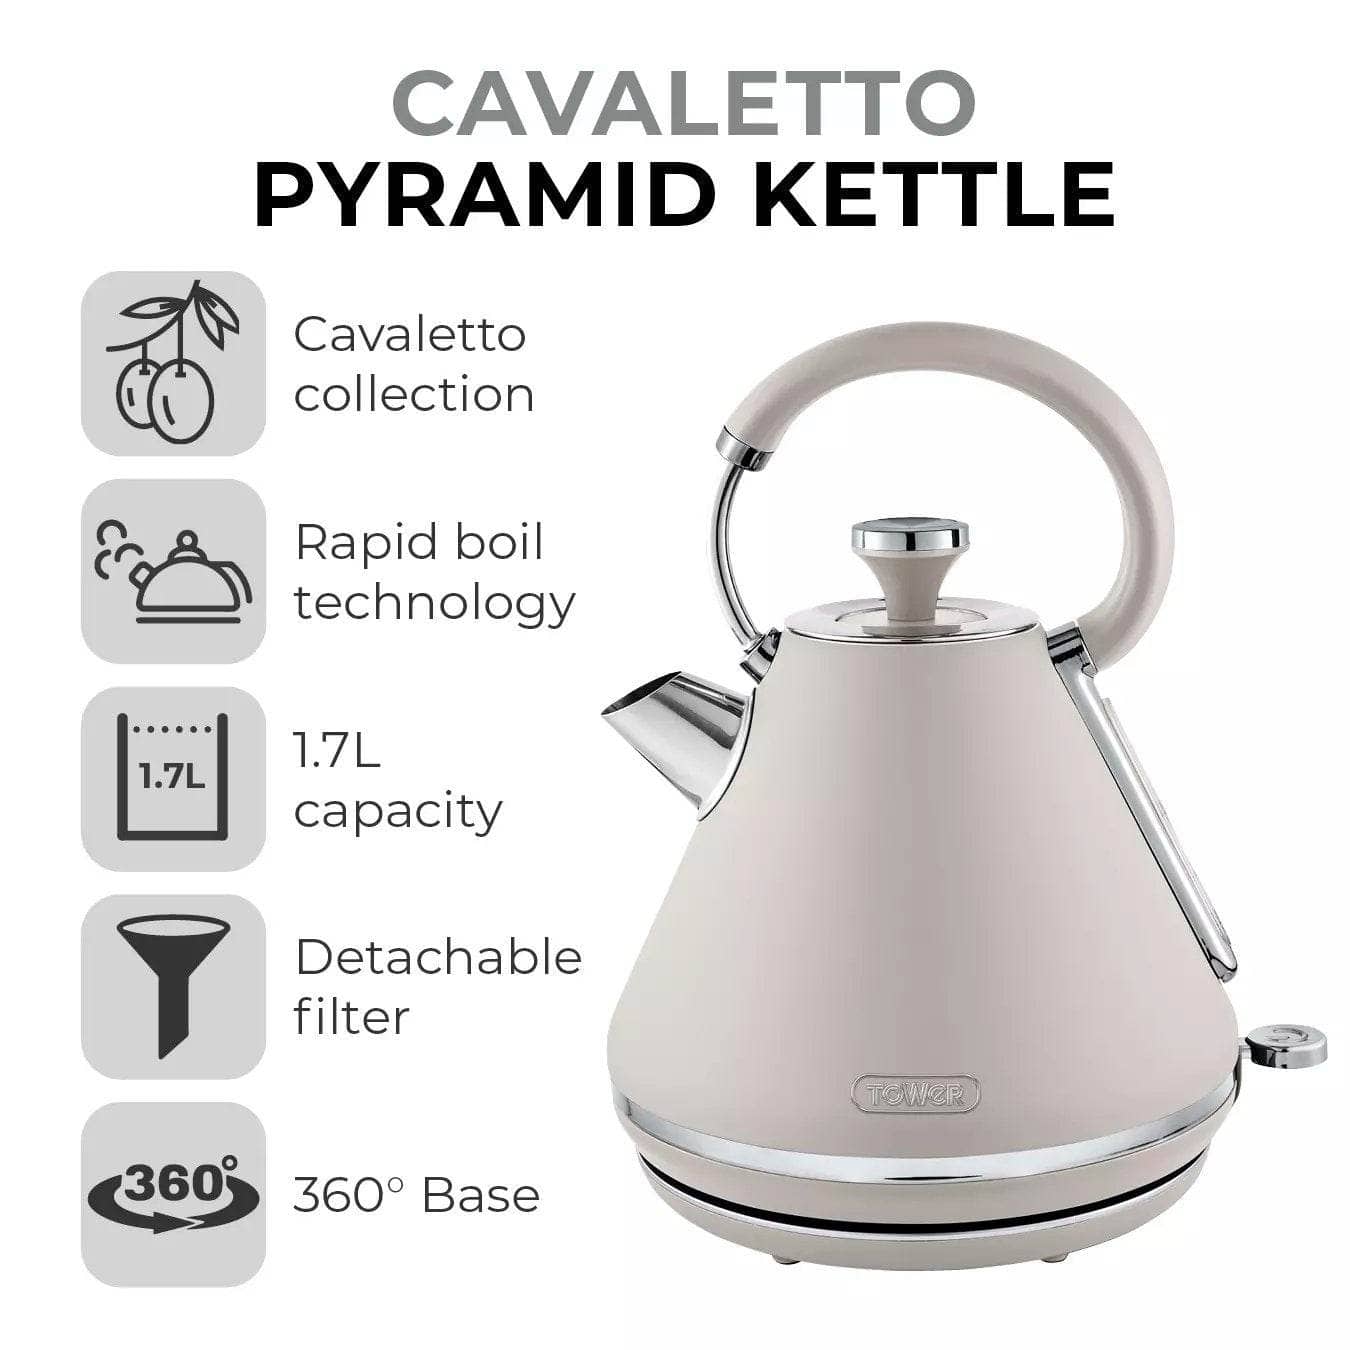 Kitchenware  -  Cavaletto Pyramid Kettle - Mushroom  -  60008027